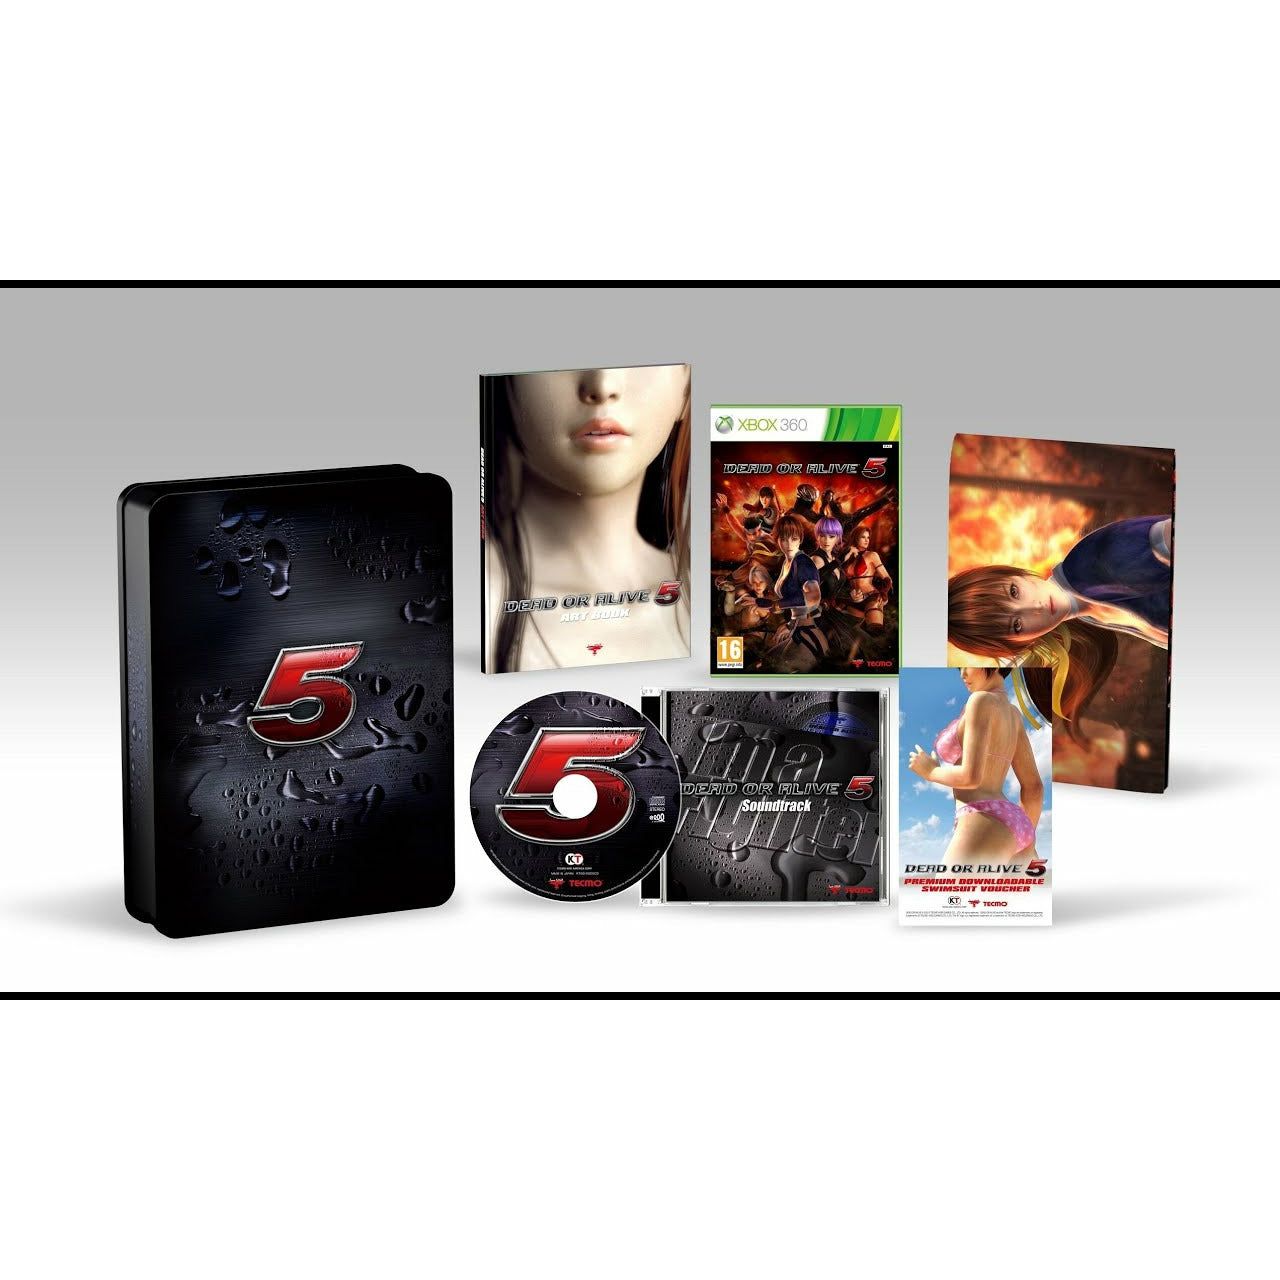 XBOX 360 - Dead Or Alive 5 Collector's Edition (No DLC codes)